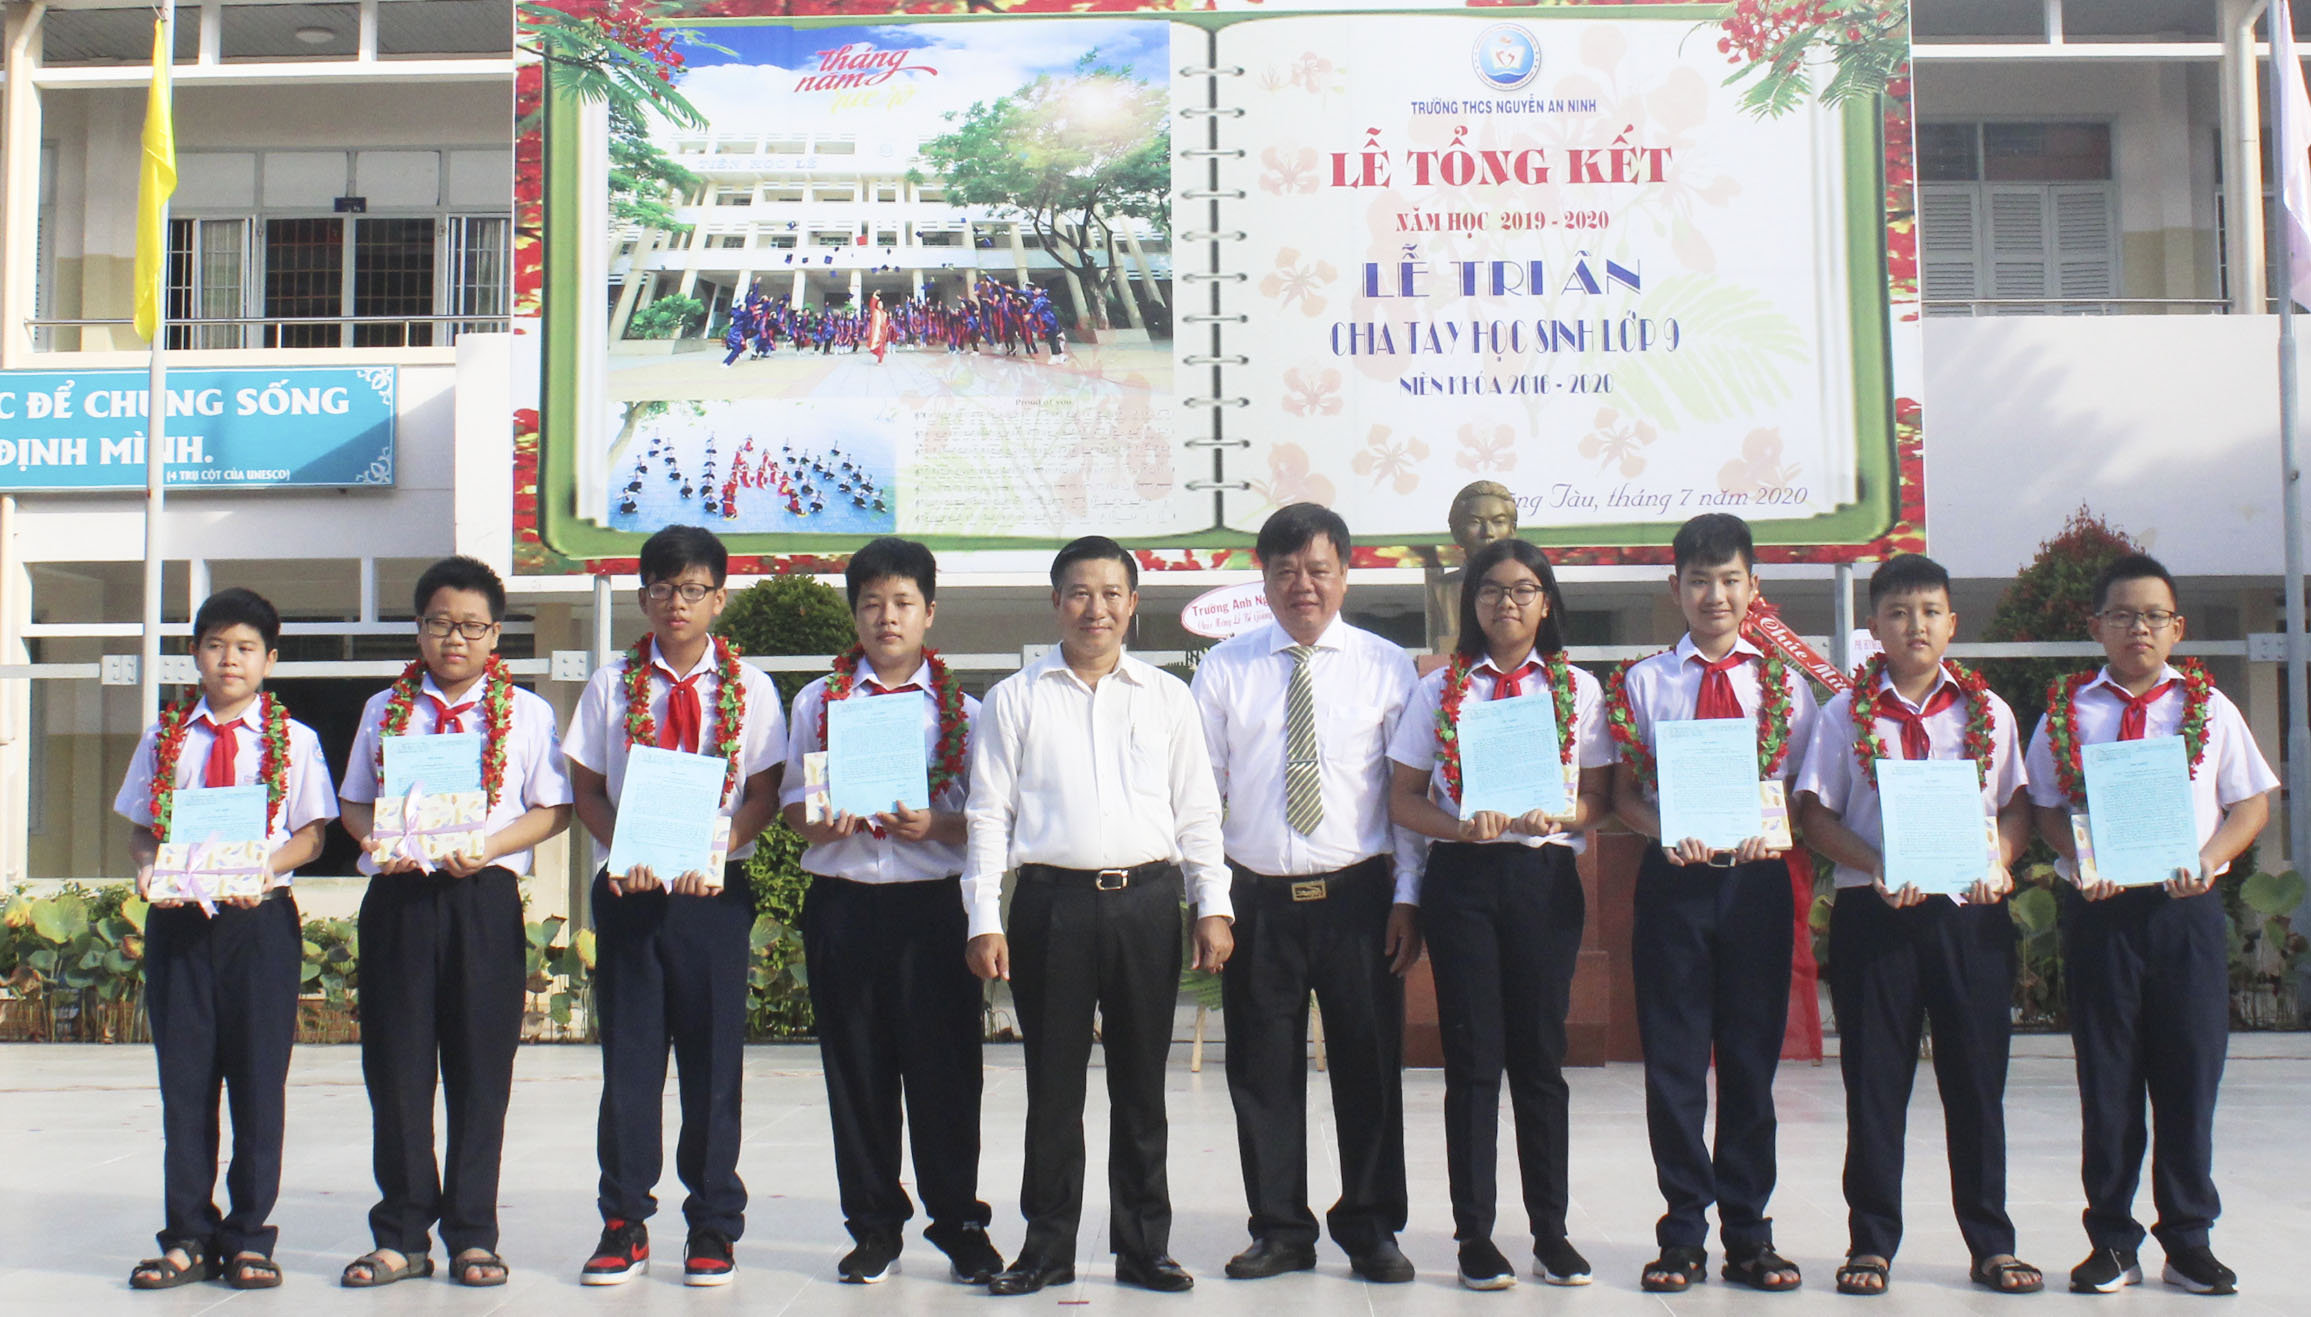 8 HS Trường THCS Nguyễn An Ninh đạt giải tại các cuộc thi cấp quốc gia và quốc tế nhận Thư khen và quà tặng của Bí thư Tỉnh ủy.